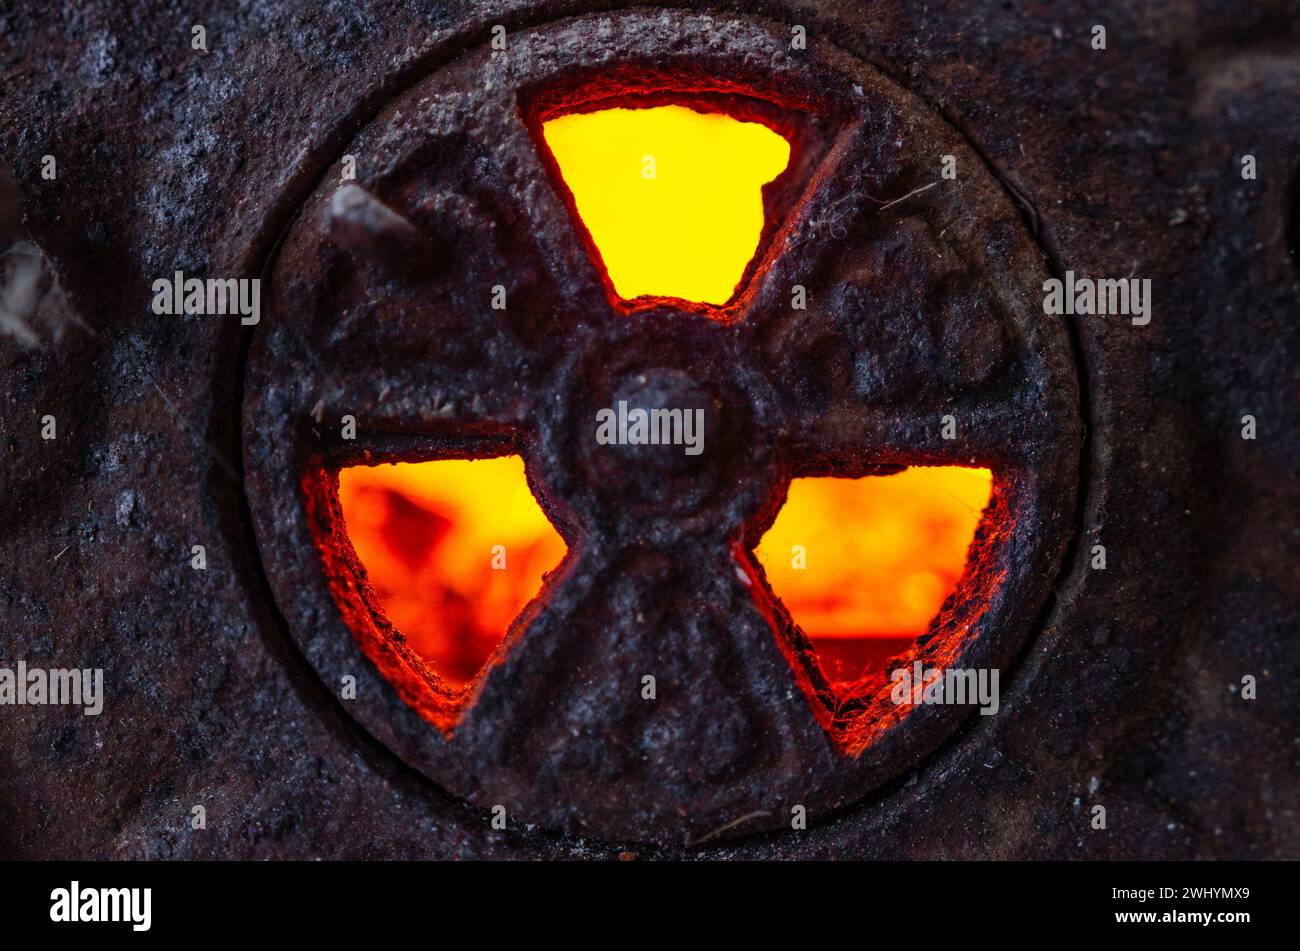 Simbolo radioattivo, ghisa, retroilluminato, carboni luminosi, fiamma, segnale di avvertimento, pericolo, pericolo nucleare, simbolo di radiazione Foto Stock